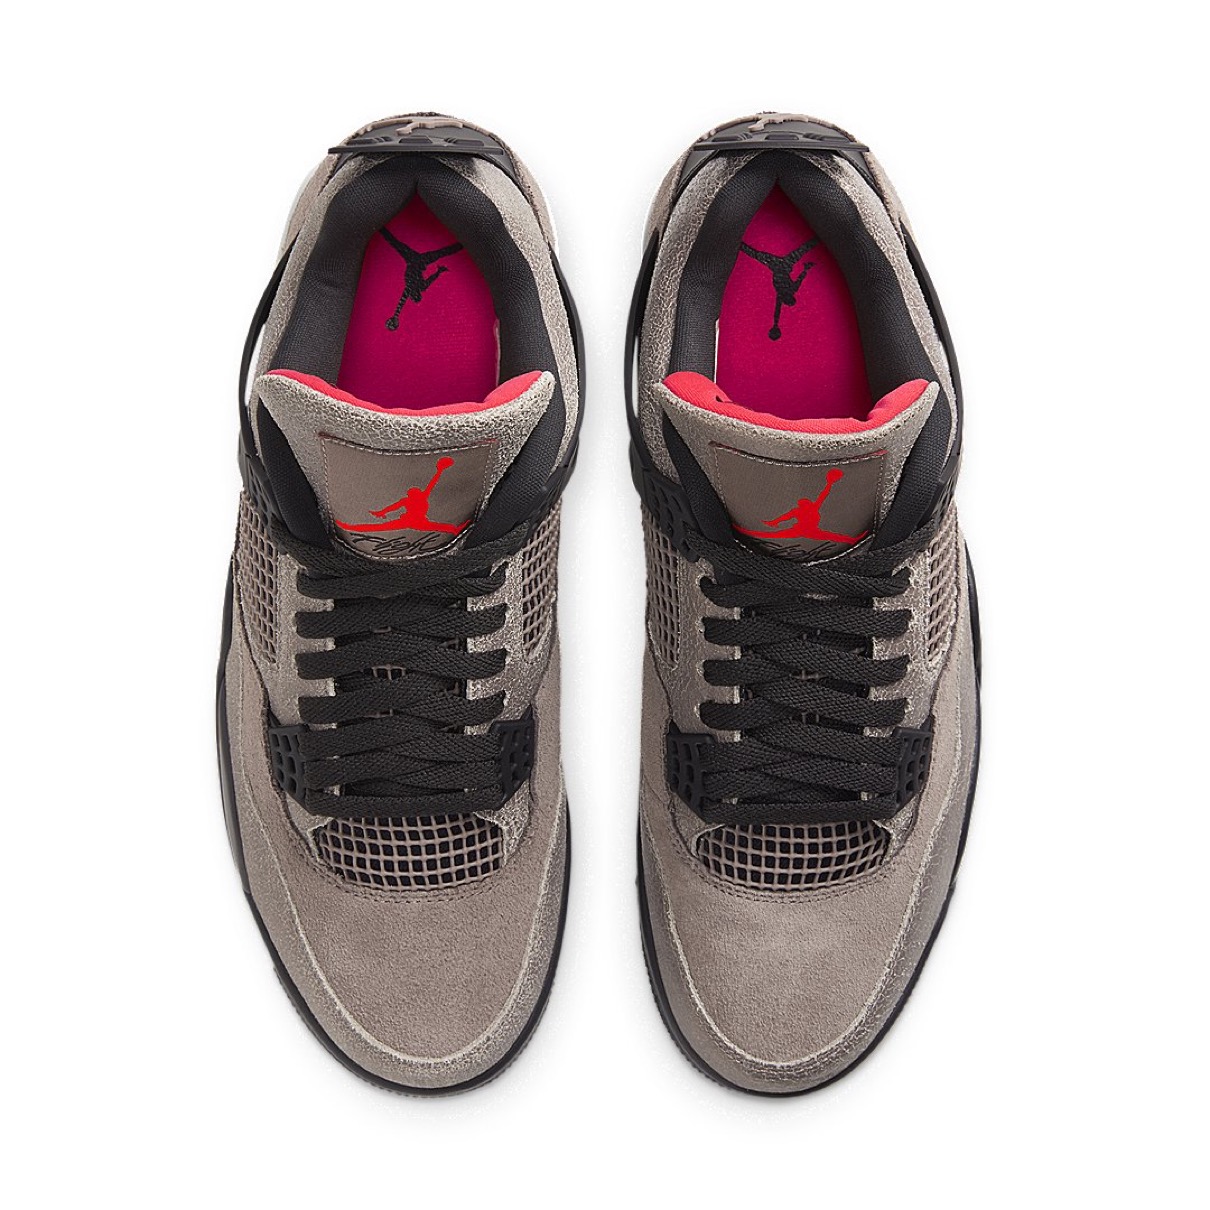 Nike】Air Jordan 4 Retro “Taupe Haze”が国内2021年2月27日に発売予定